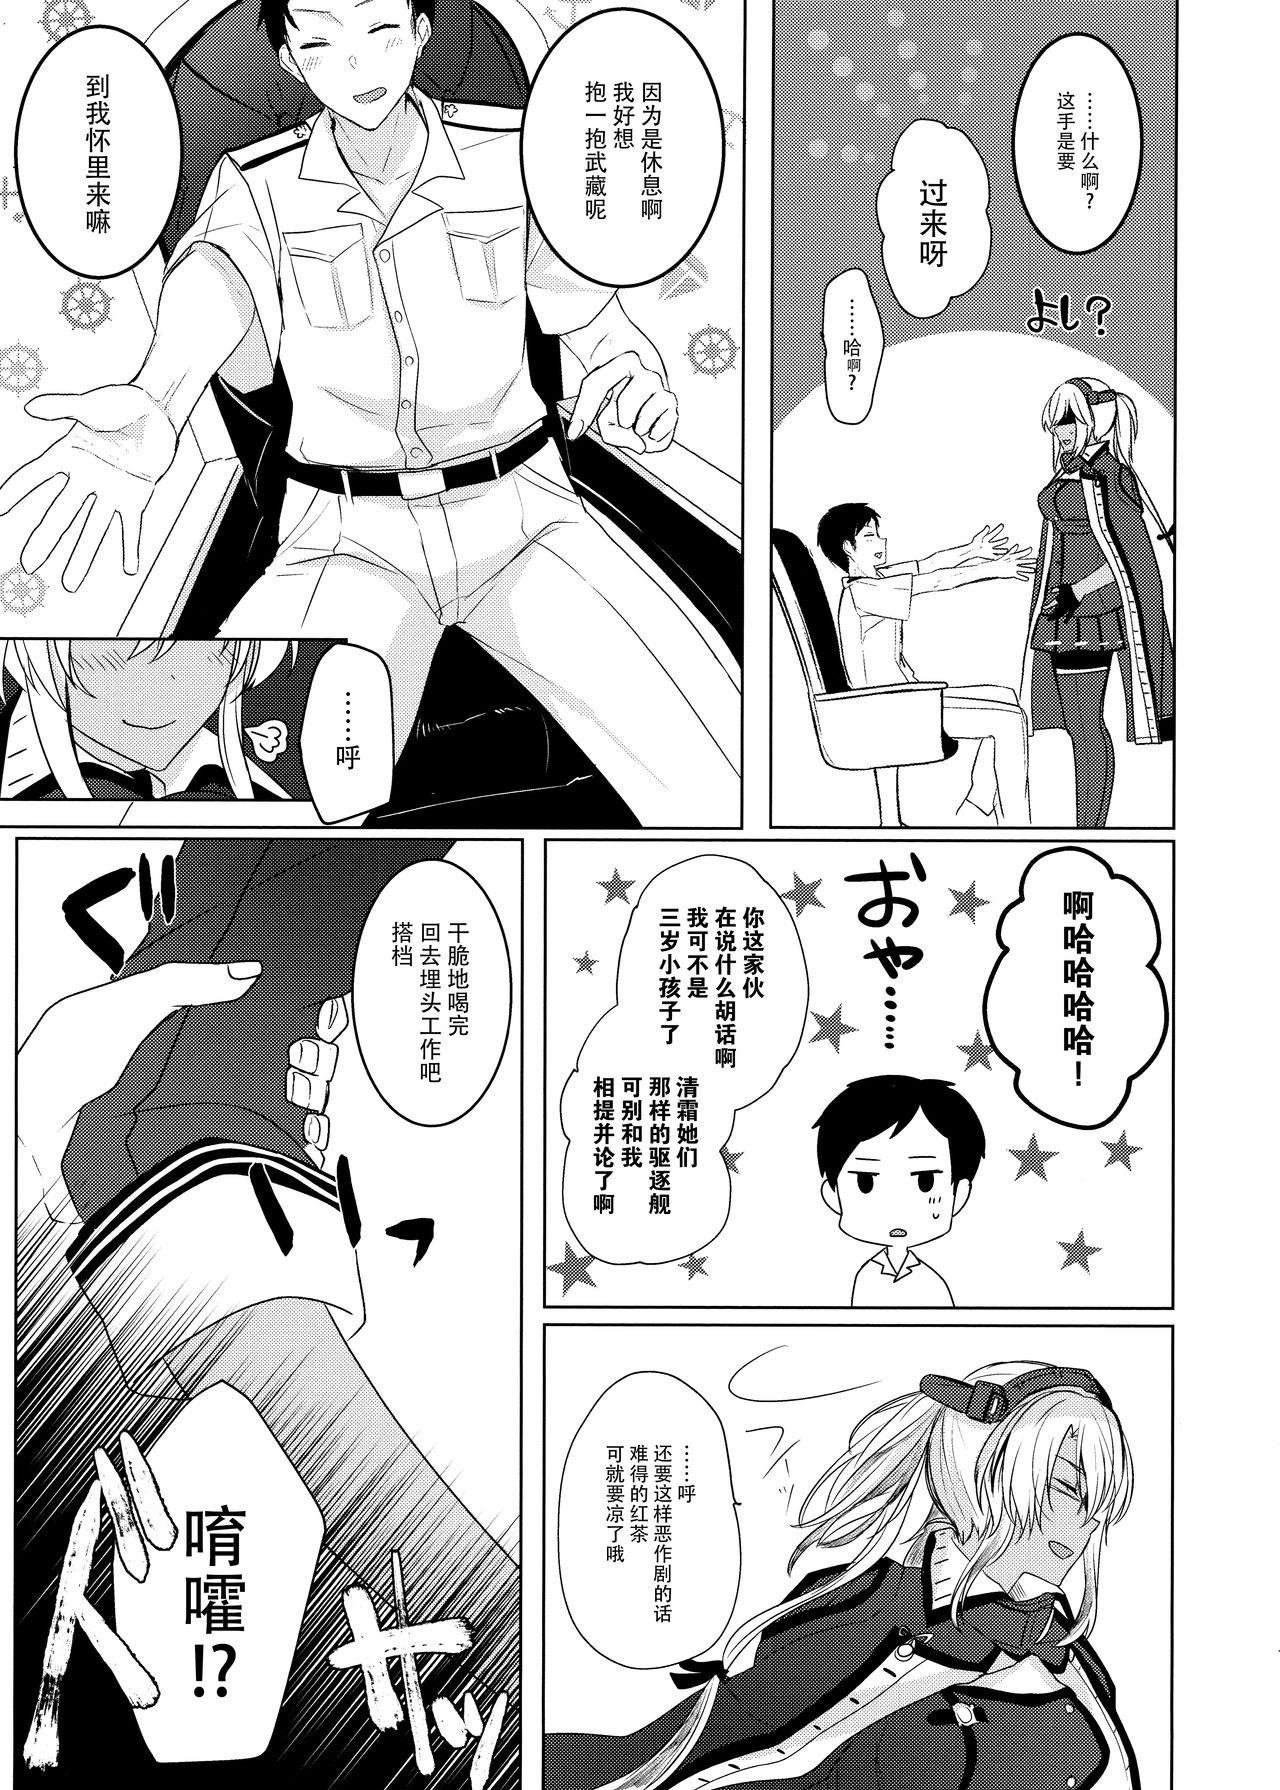 Gapes Gaping Asshole Musashi-san no Yoru Jijou Omoide no Seifuku Hen - Kantai collection Flash - Page 7